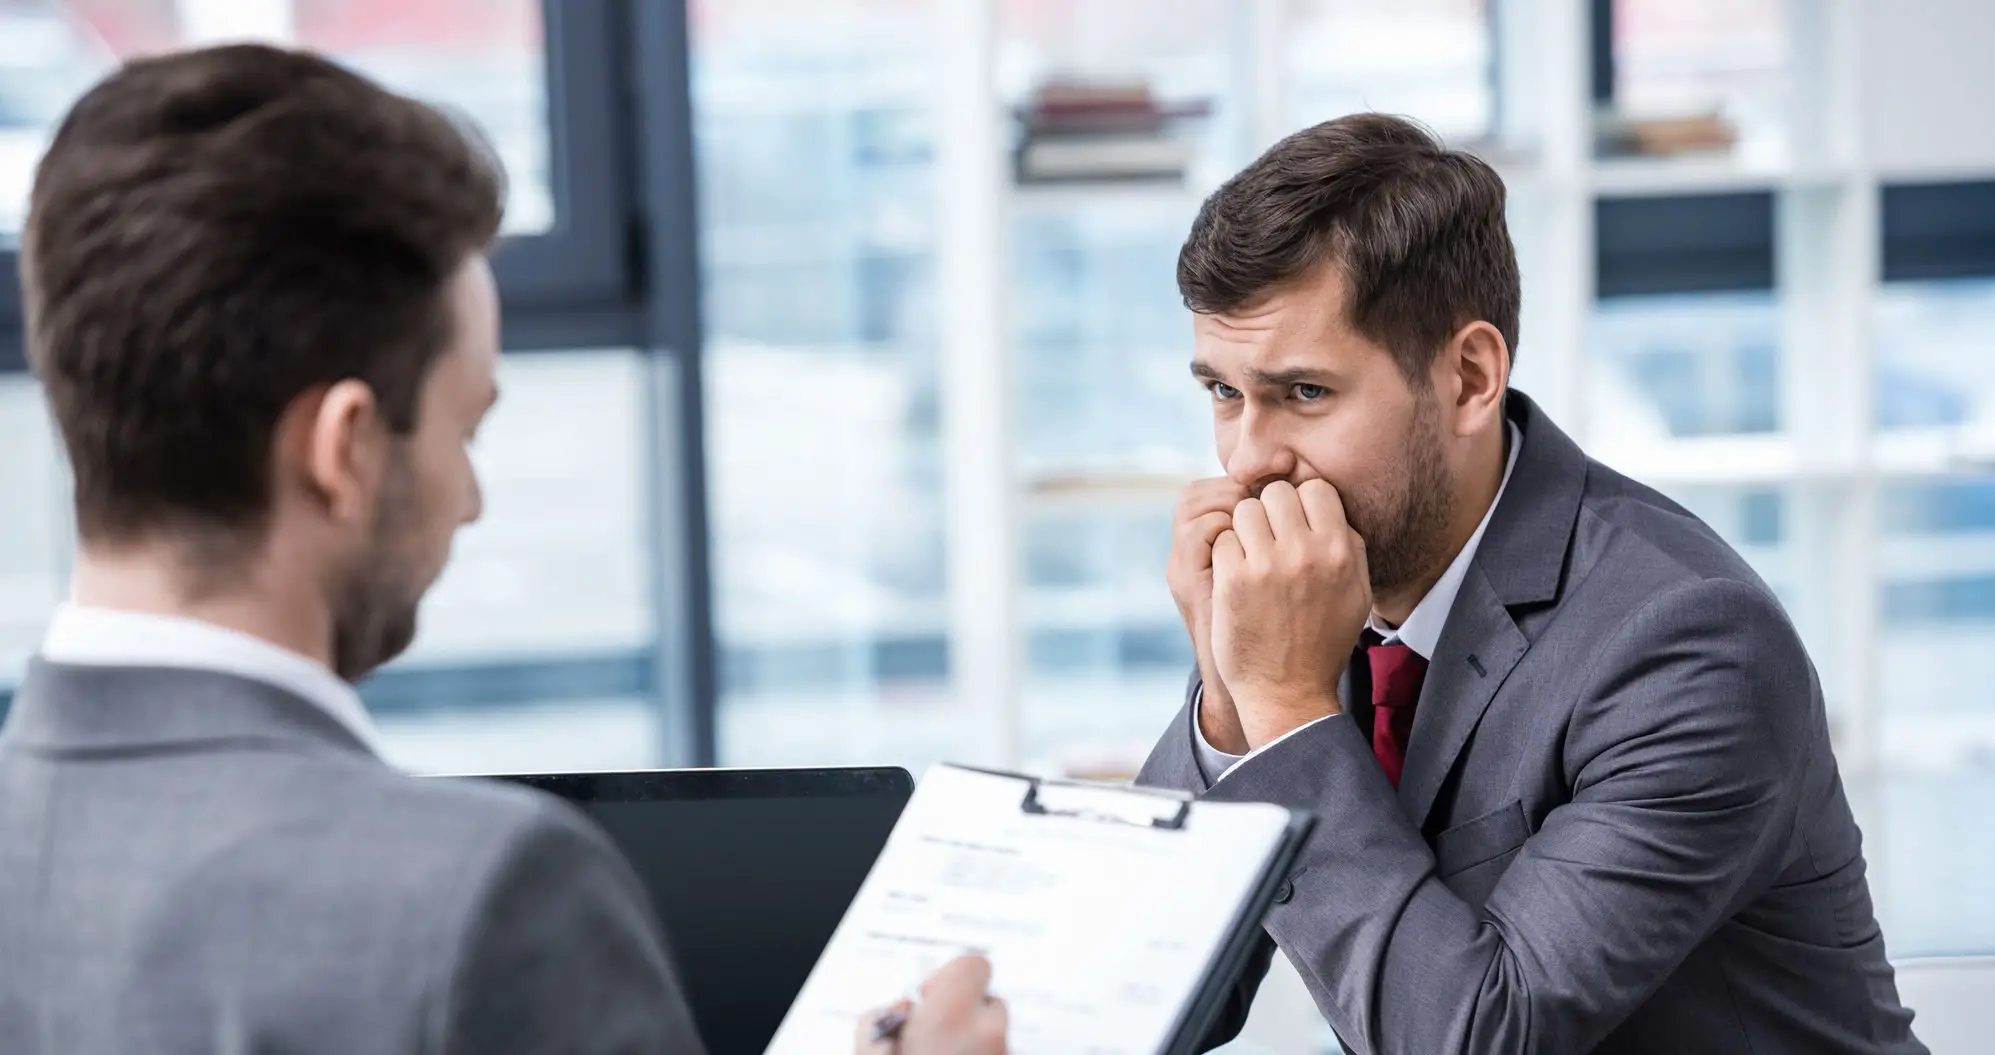 3 Ways to Avoid Job Interview Stress